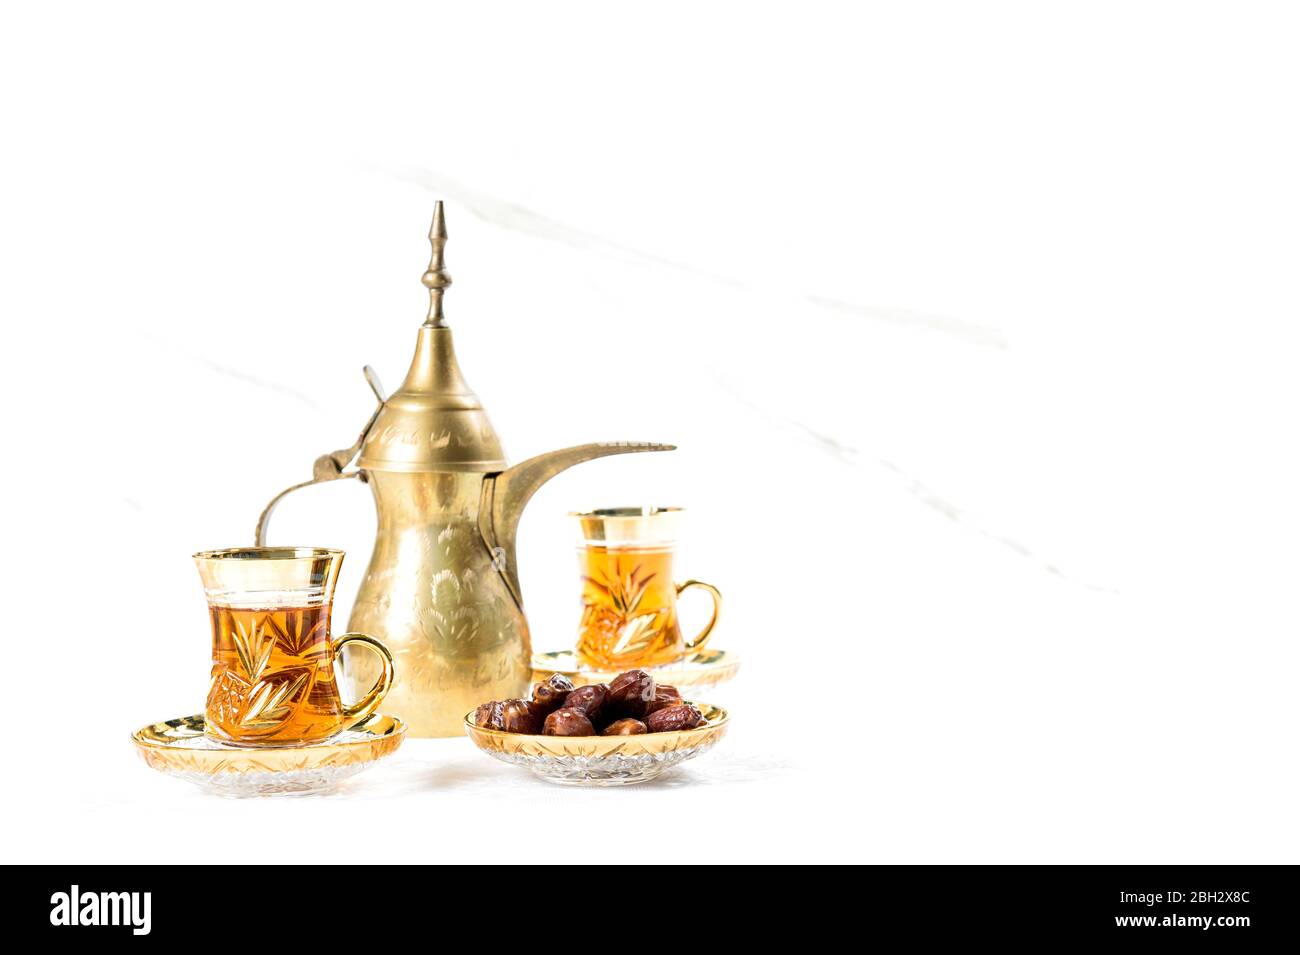 Teegläser mit Datteln auf weißem Hintergrund. Orientalische Dekoration Stockfoto